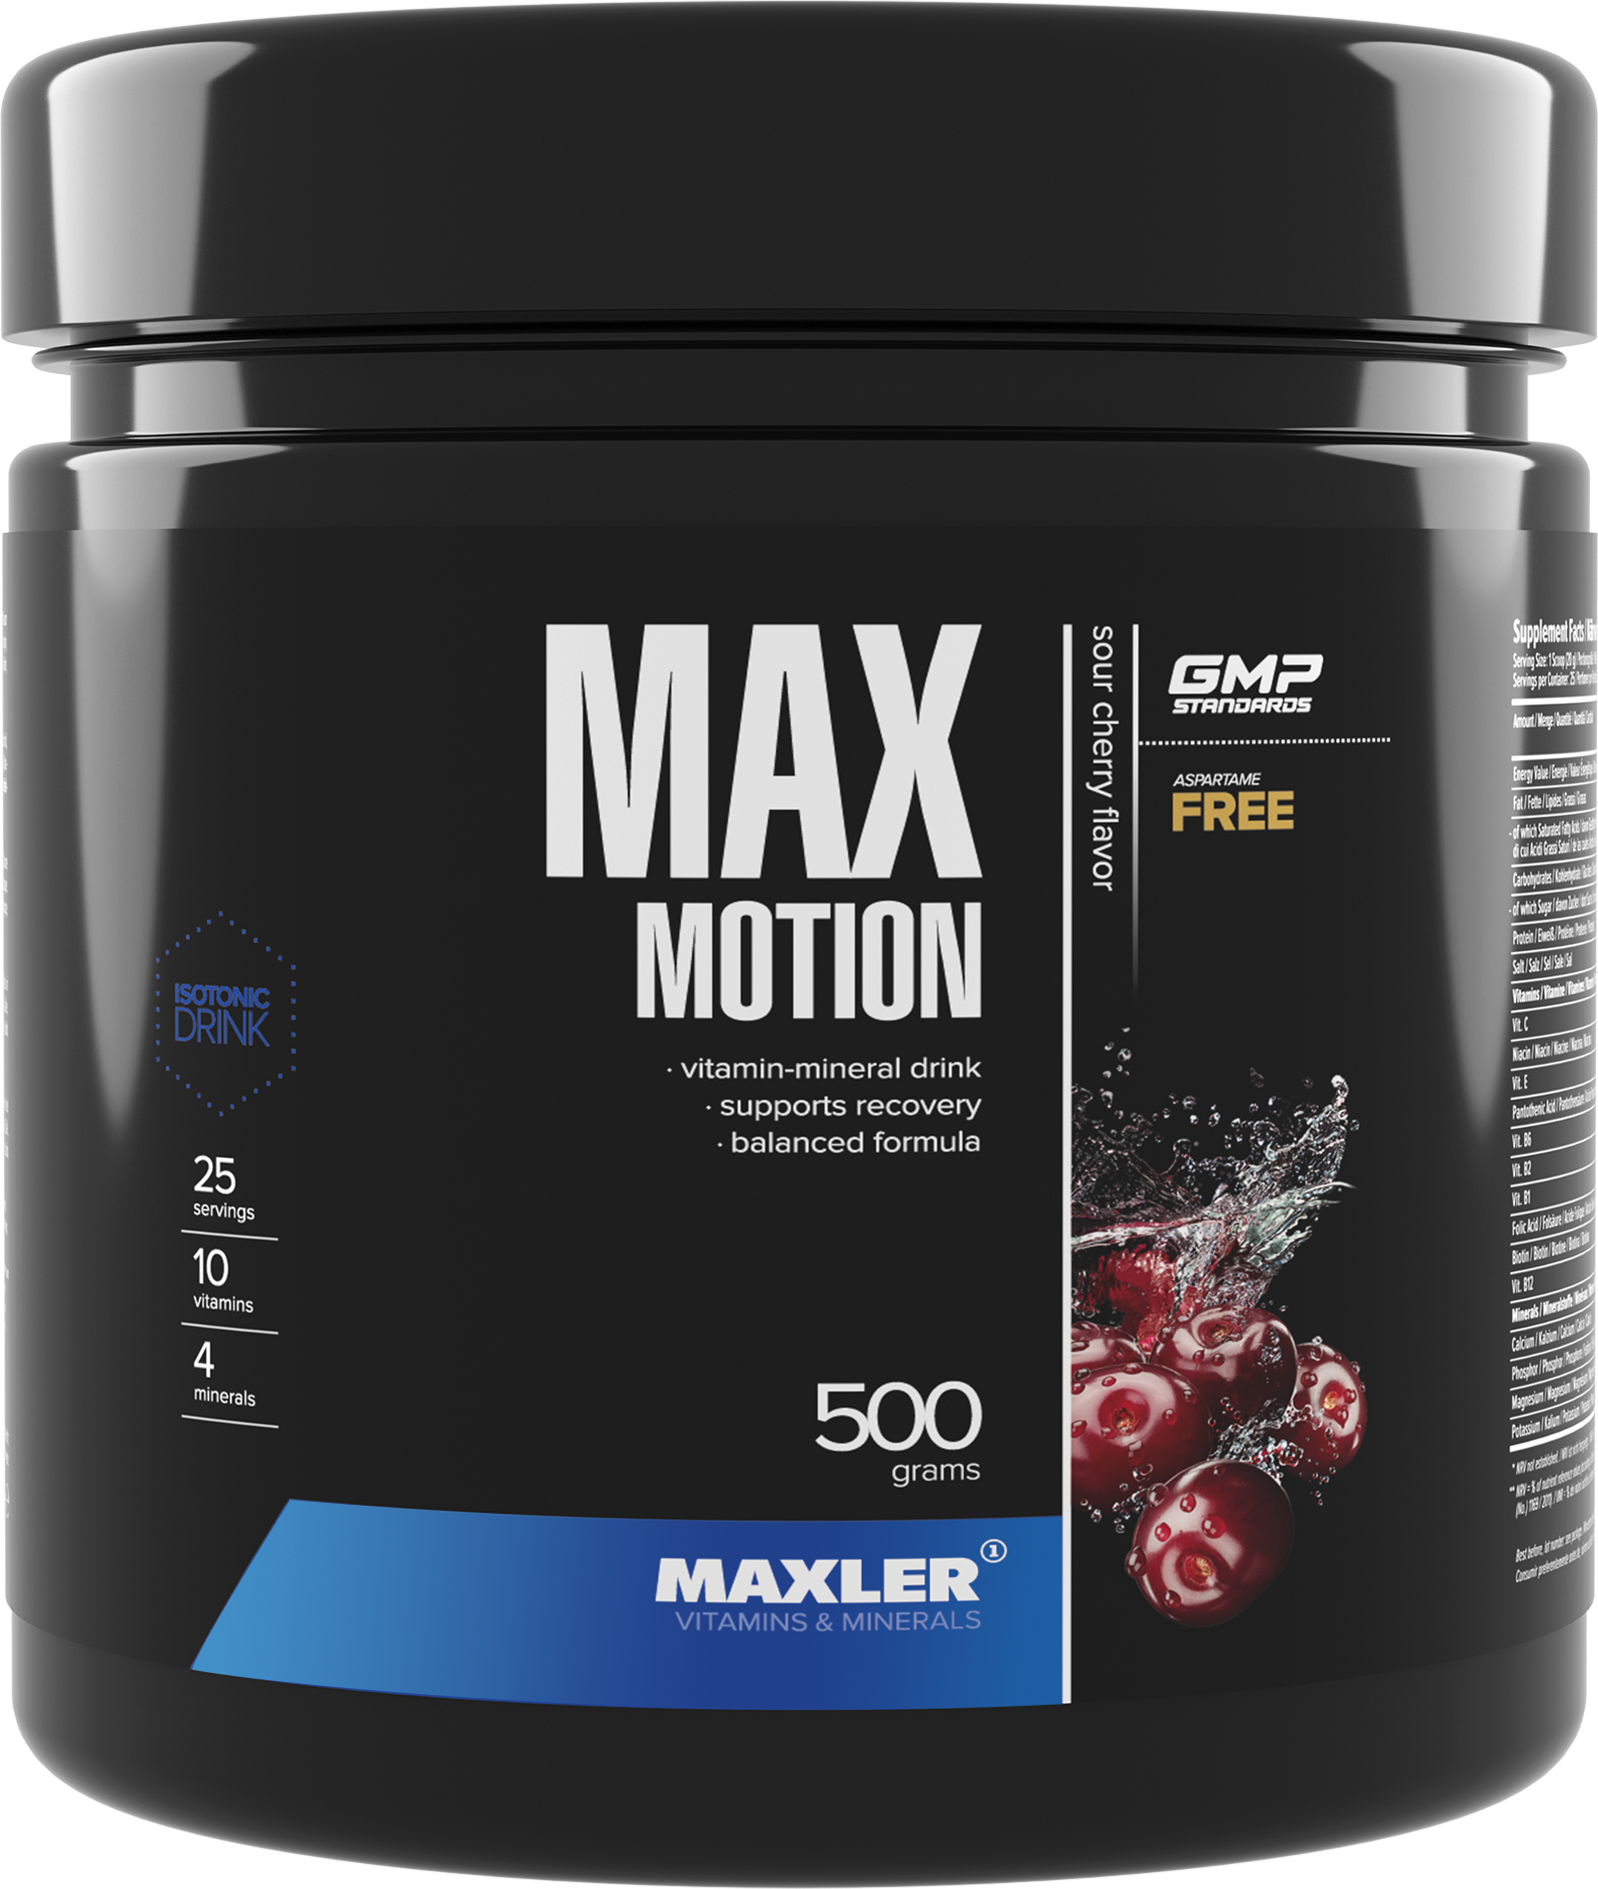 Витаминно-минеральный комплекс Maxler Max Motion - Вишня, 500г - Сбалансированная формула - 20 порций